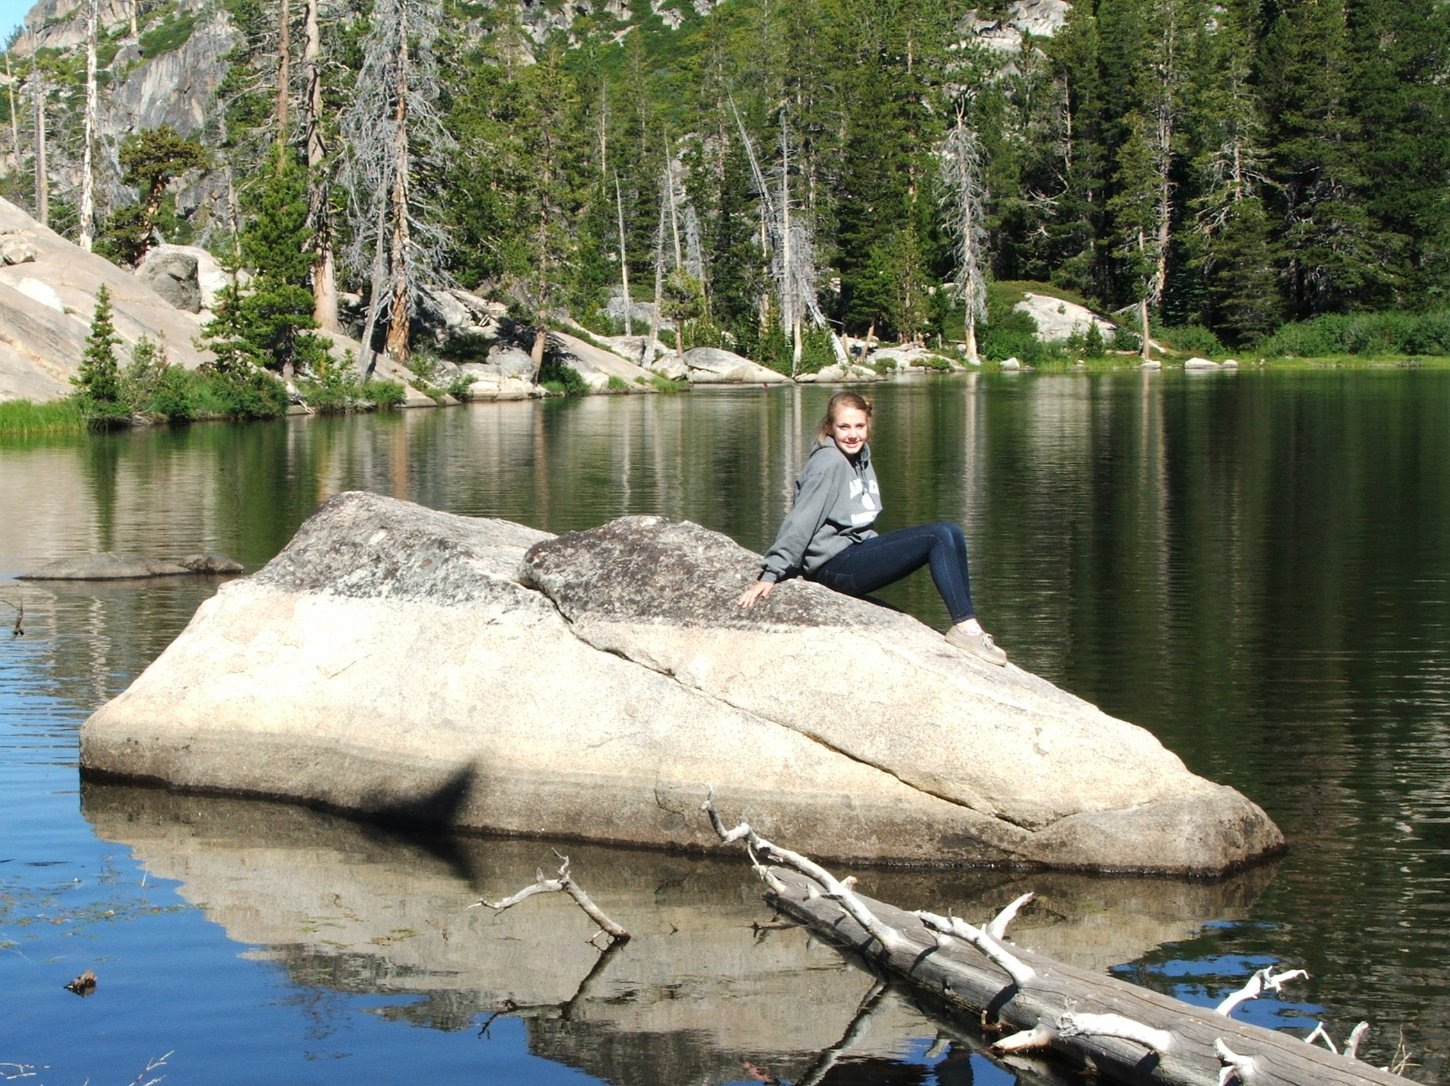 Sierra on the lake